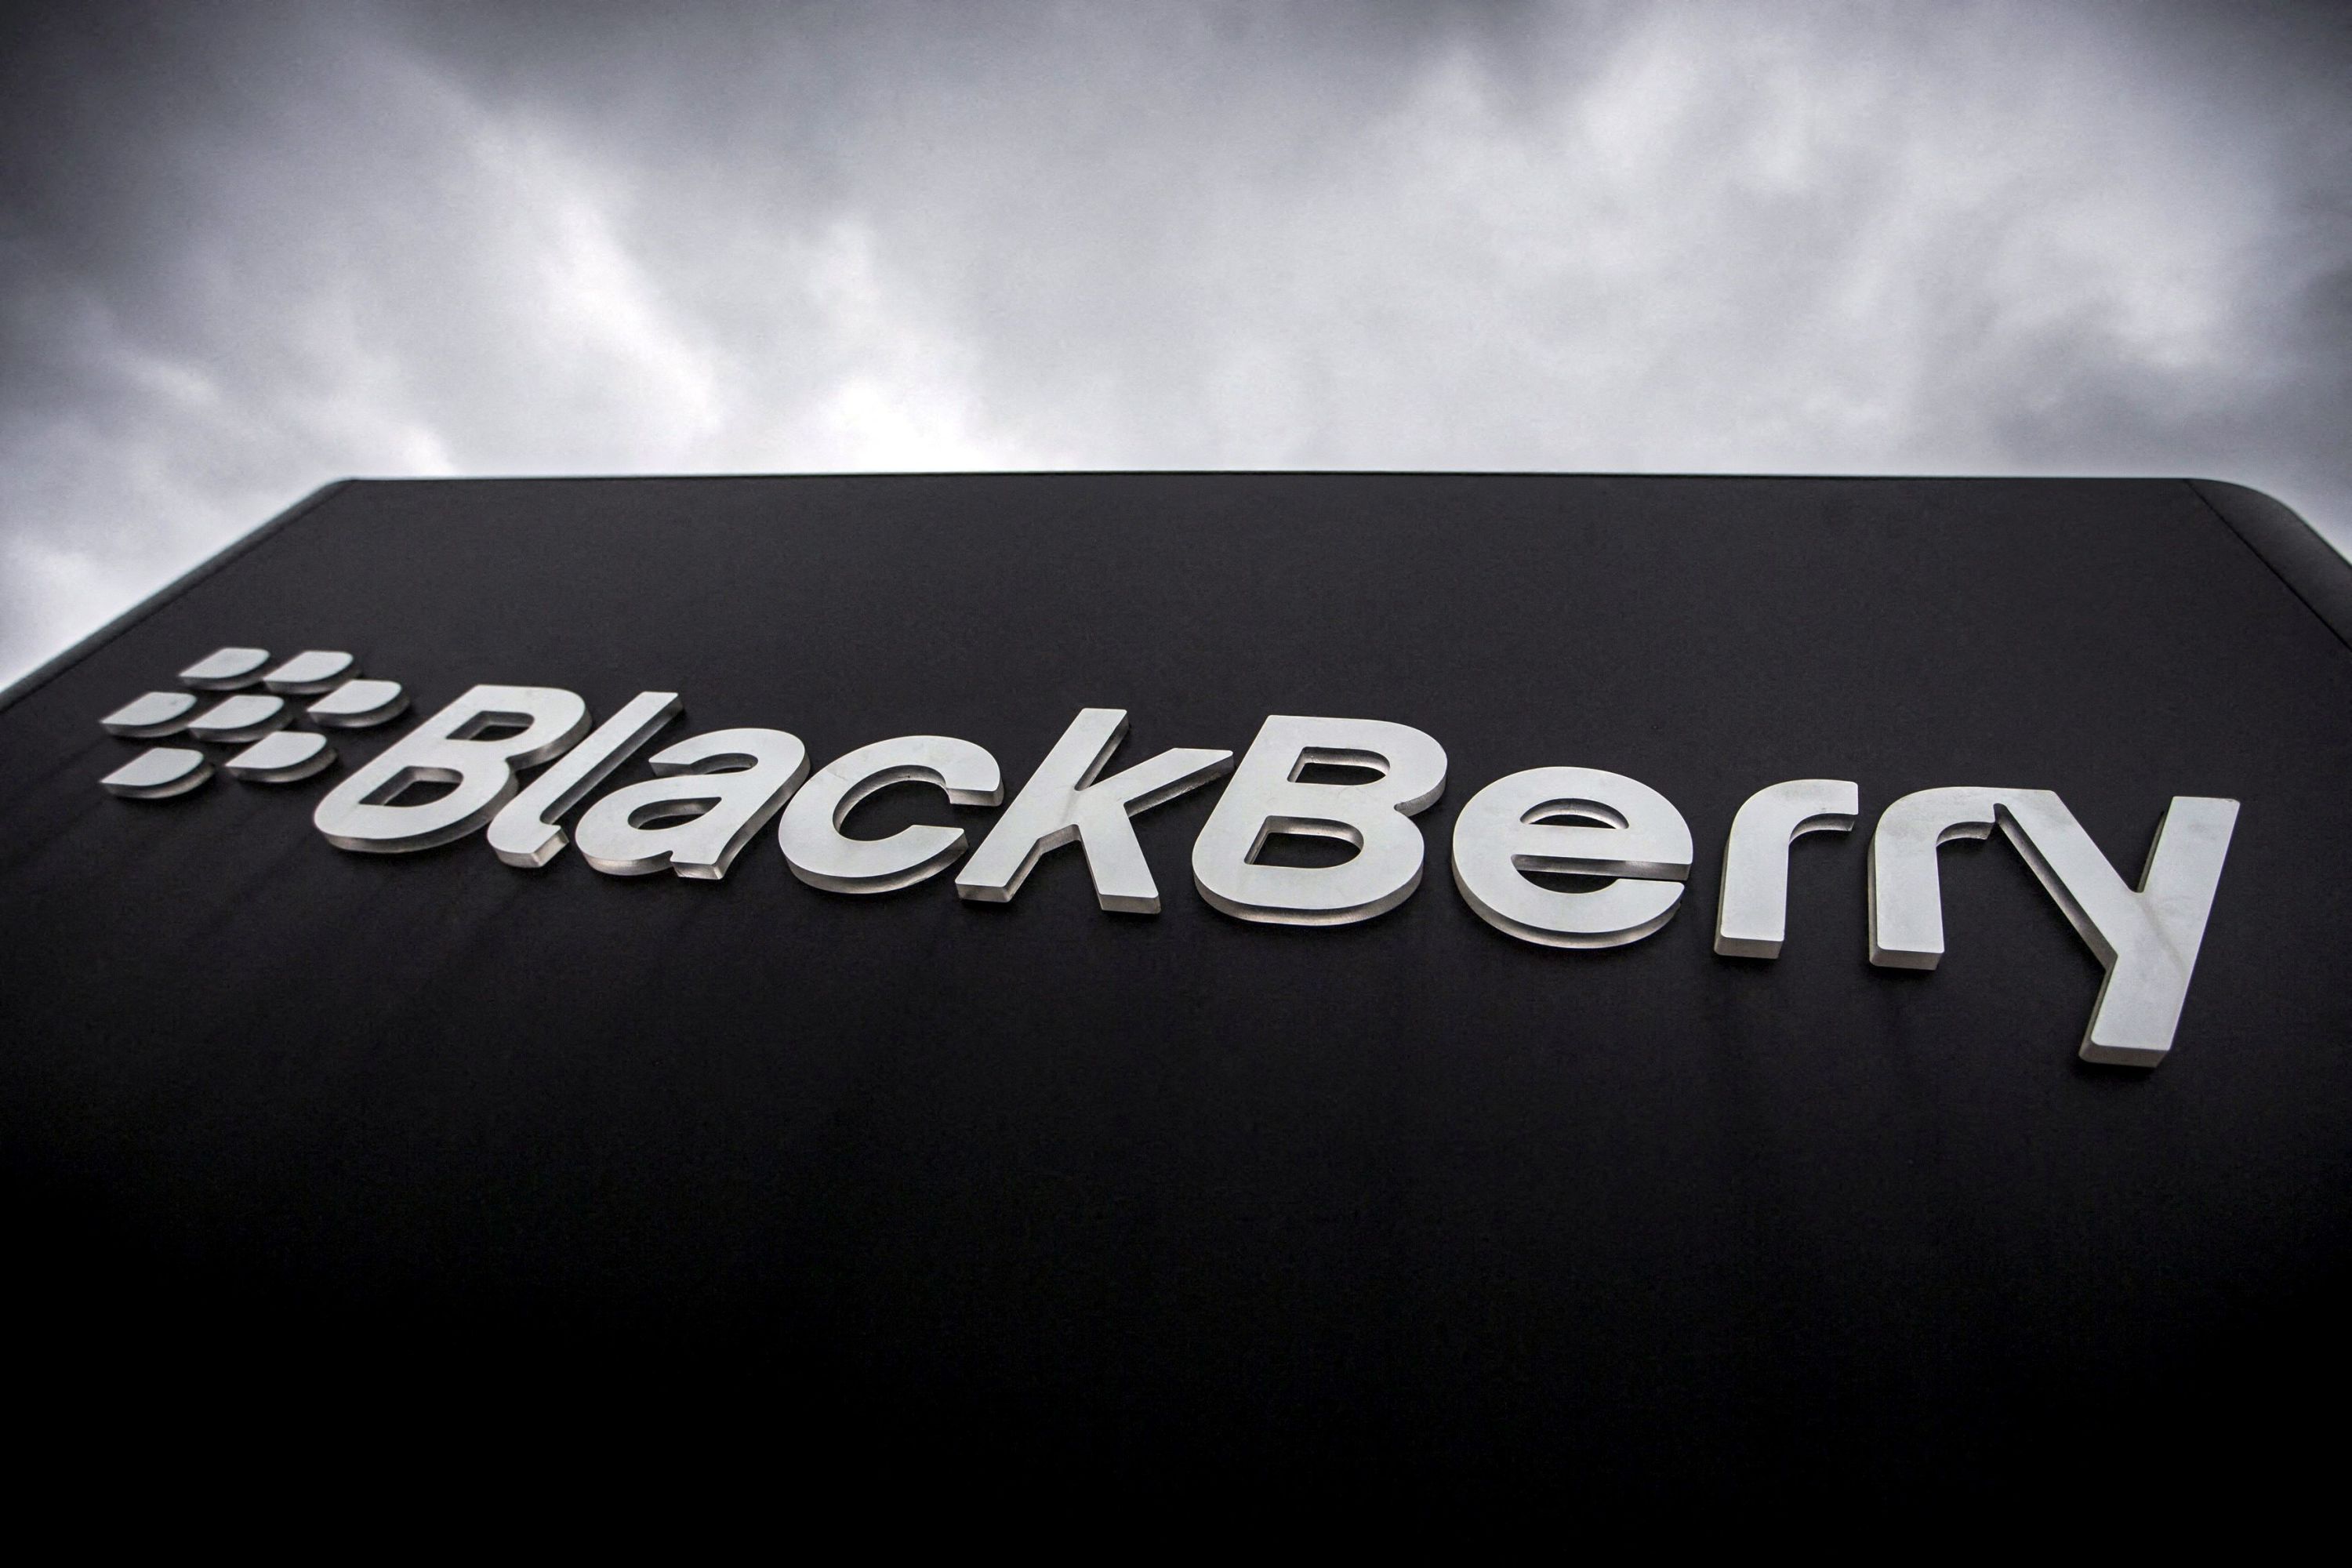 BlackBerry vend ses brevets dans la téléphonie mobile pour 600 millions de dollars